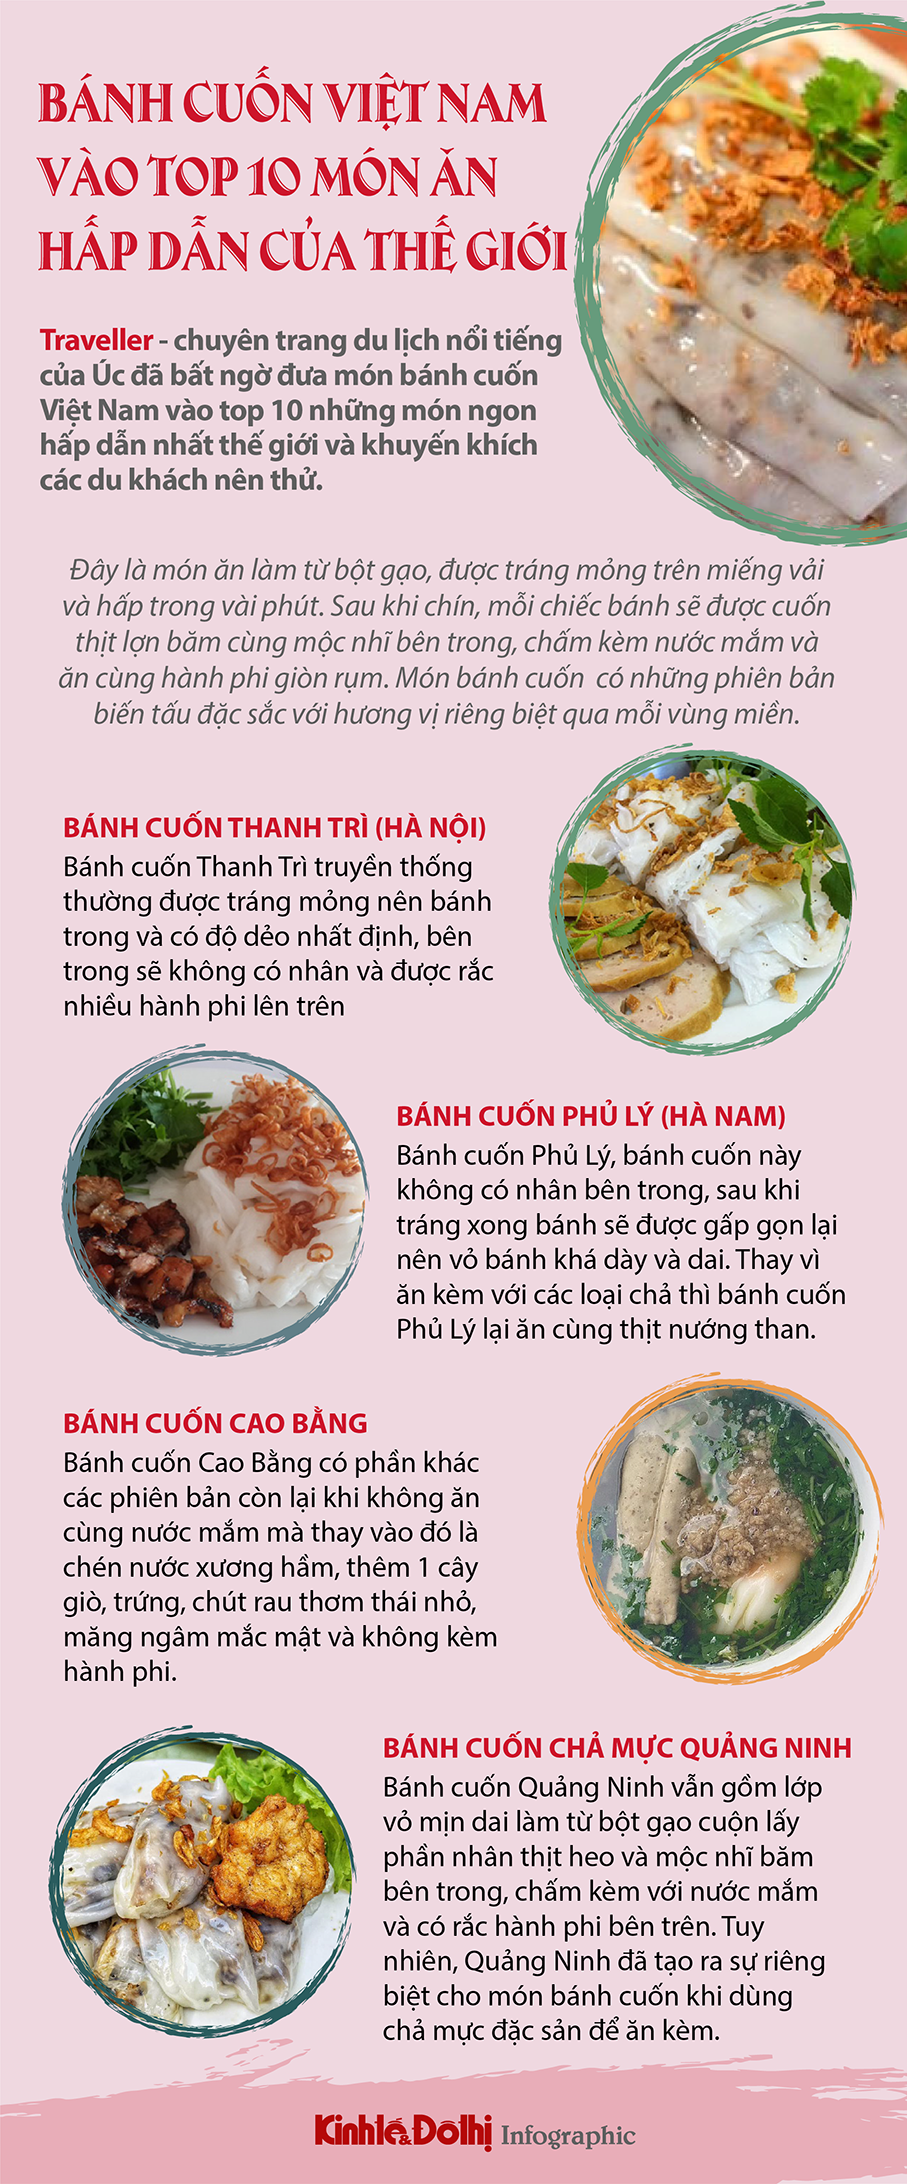 Bánh cuốn Việt Nam vào top 10 món ngon hấp dẫn nhất thế giới - Ảnh 1